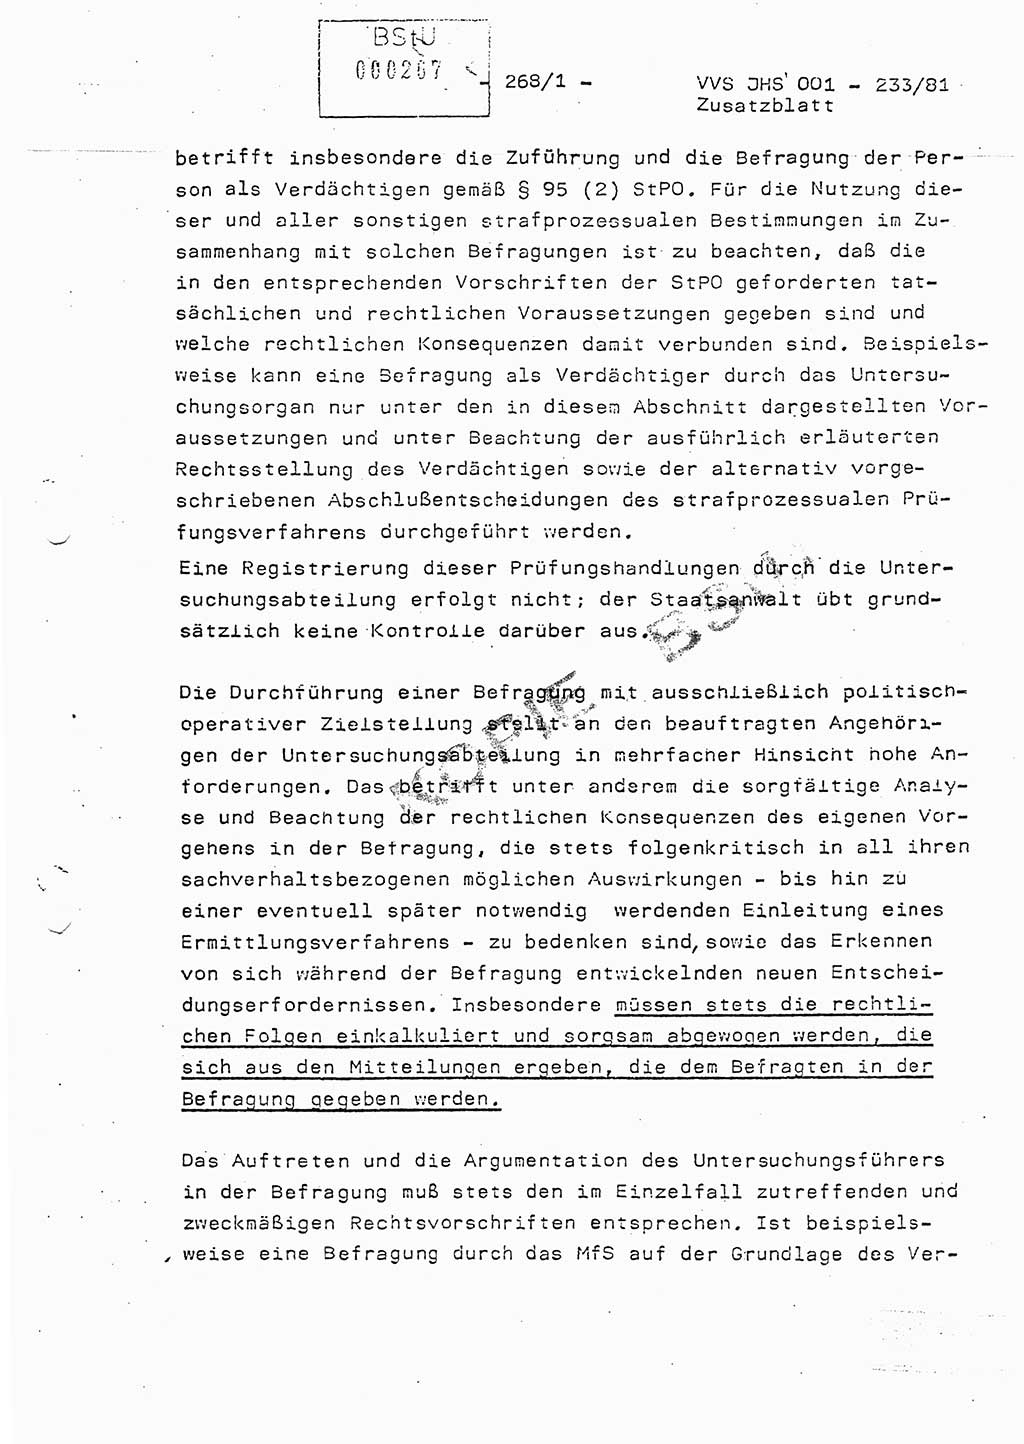 Dissertation Oberstleutnant Horst Zank (JHS), Oberstleutnant Dr. Karl-Heinz Knoblauch (JHS), Oberstleutnant Gustav-Adolf Kowalewski (HA Ⅸ), Oberstleutnant Wolfgang Plötner (HA Ⅸ), Ministerium für Staatssicherheit (MfS) [Deutsche Demokratische Republik (DDR)], Juristische Hochschule (JHS), Vertrauliche Verschlußsache (VVS) o001-233/81, Potsdam 1981, Blatt 268/1 (Diss. MfS DDR JHS VVS o001-233/81 1981, Bl. 268/1)